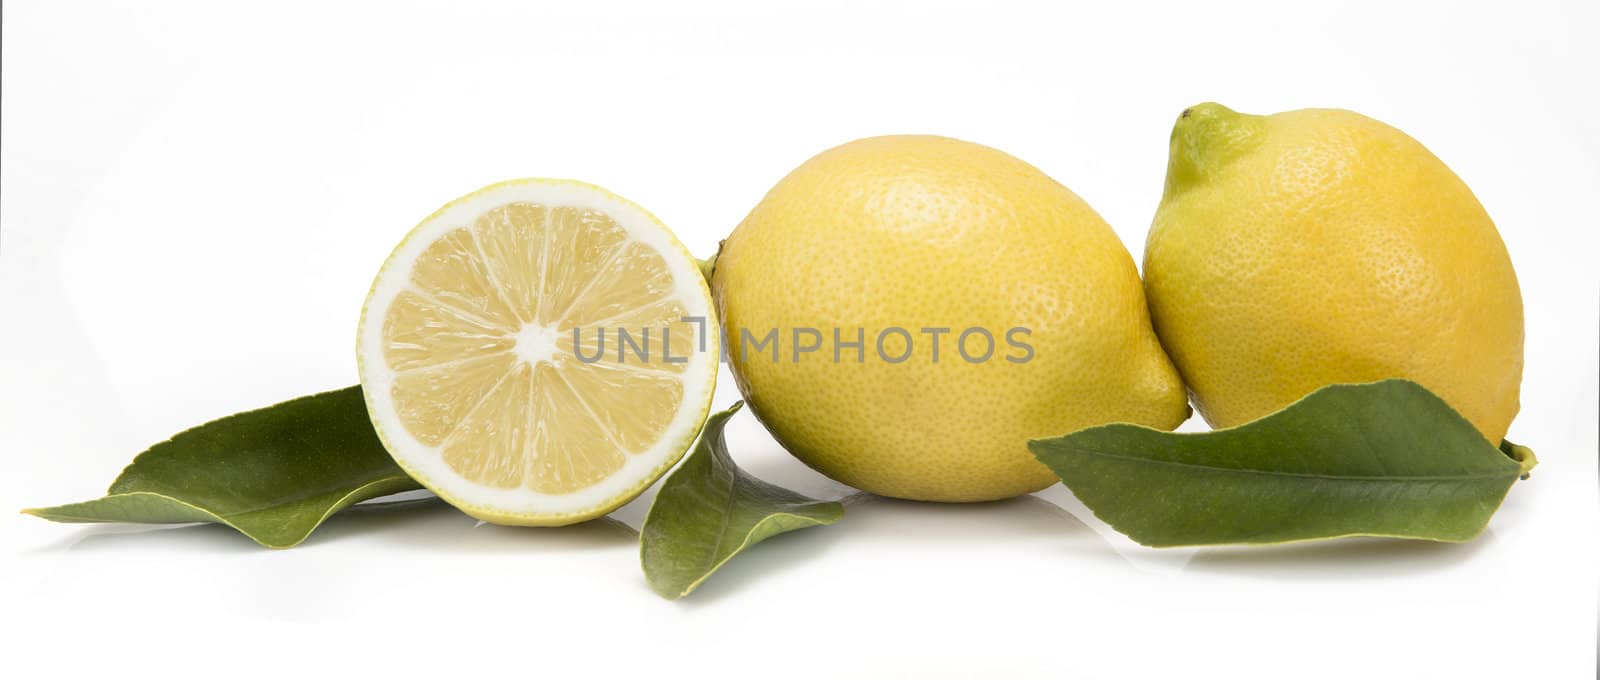 Fresh lemons isolated on a white background